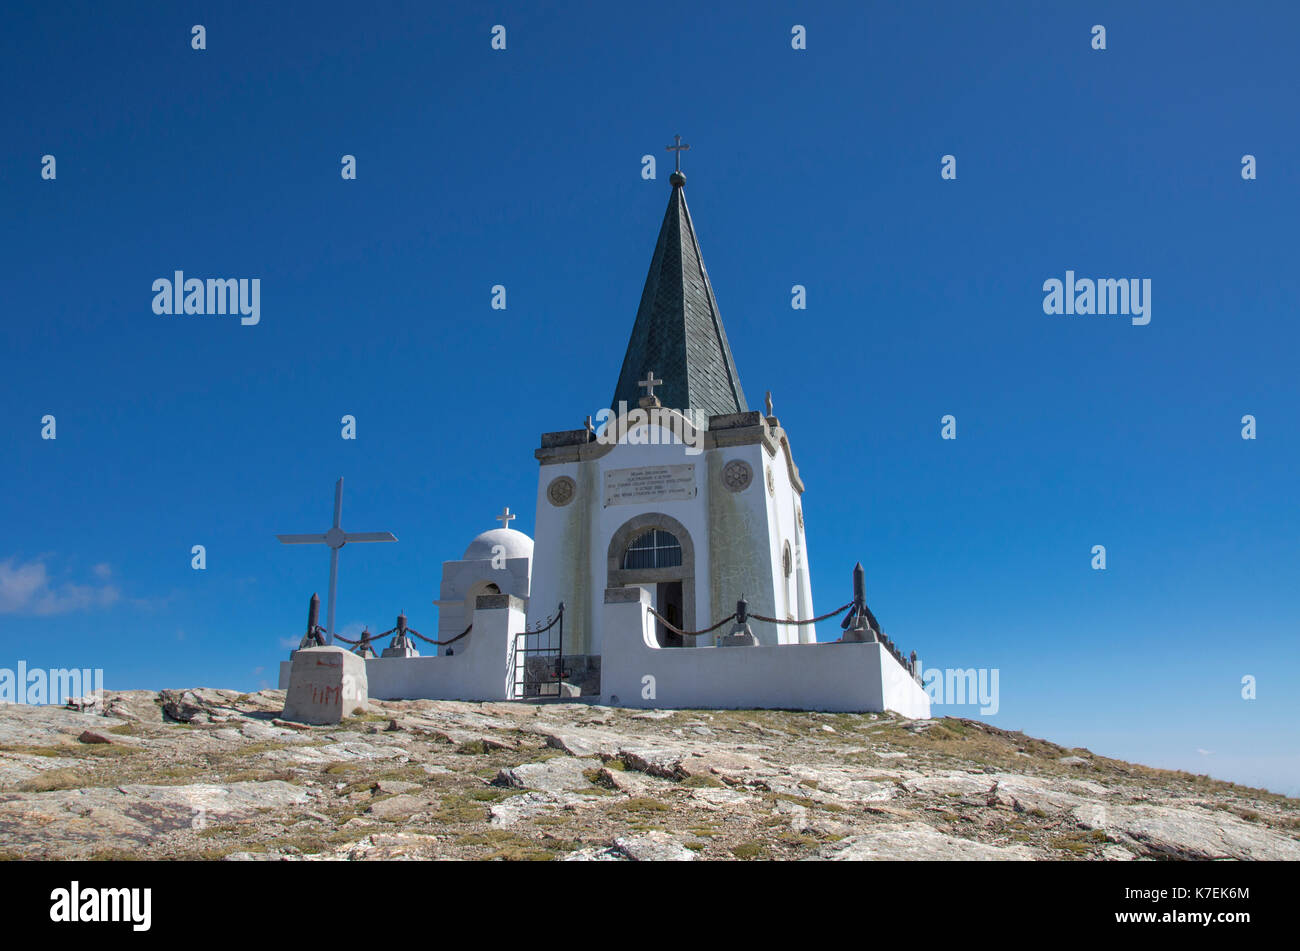 Kajmakcalan Kirche-WW 1 Lage - Mazedonien - Griechenland Grenze Stockfoto